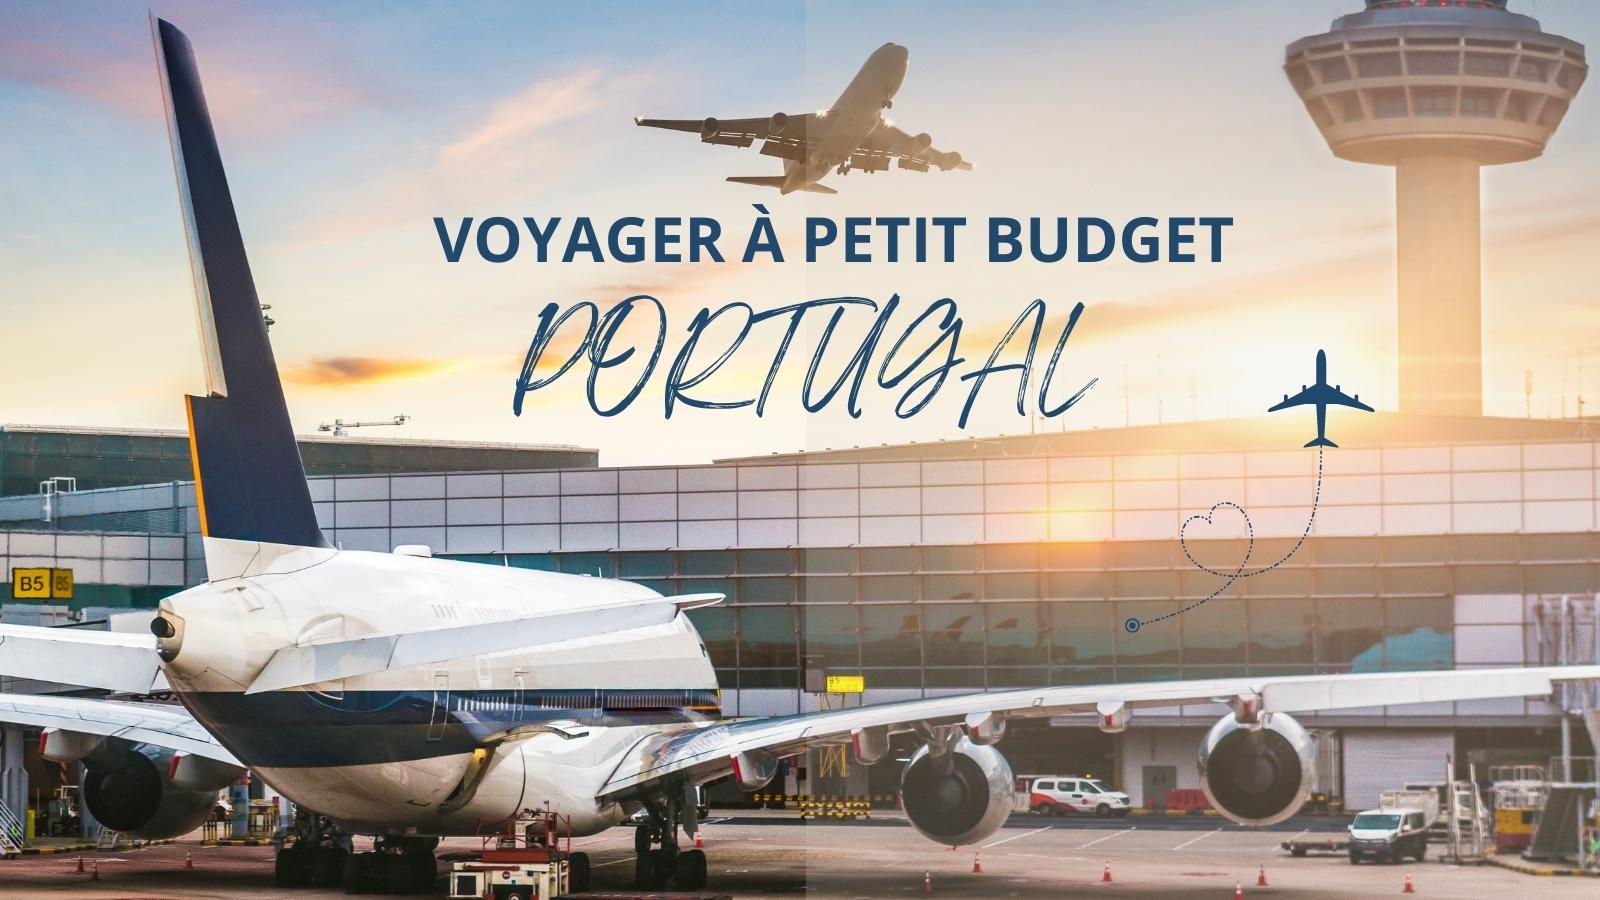 bons plans pour voyager avec un petit budget au Portugal